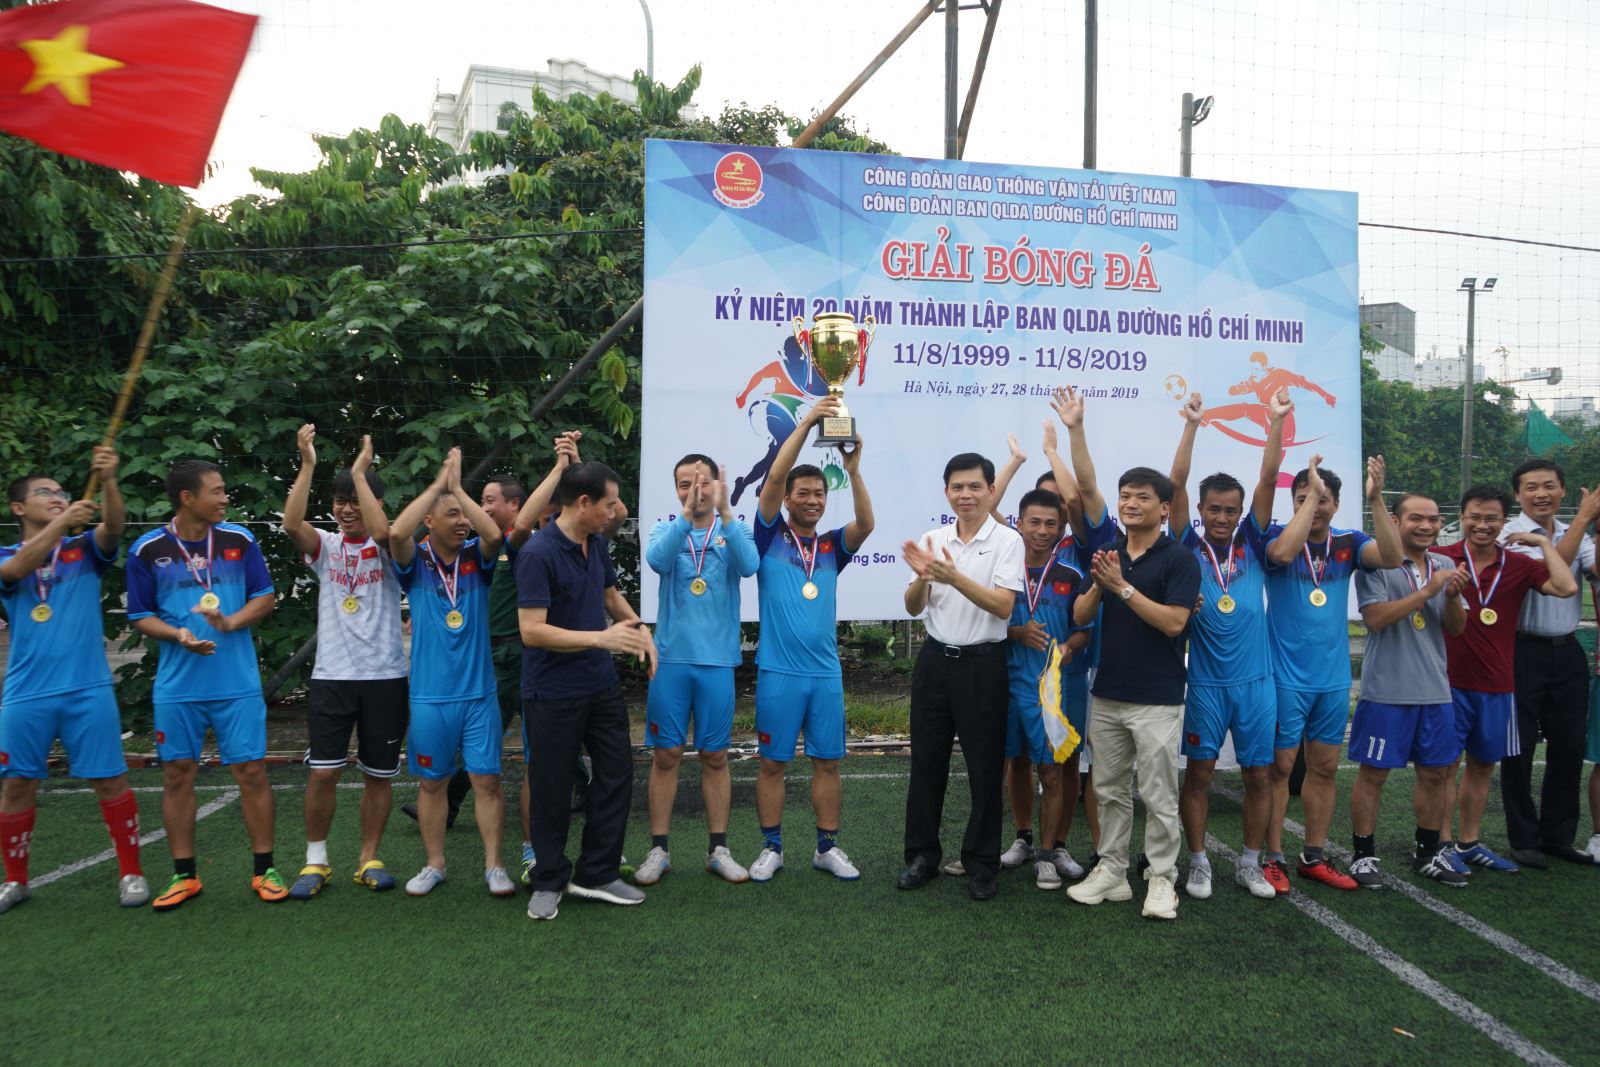 Vô địch giải bóng đá kỷ niệm 20 năm thành lập Ban QLDA đường Hồ Chí Minh 5